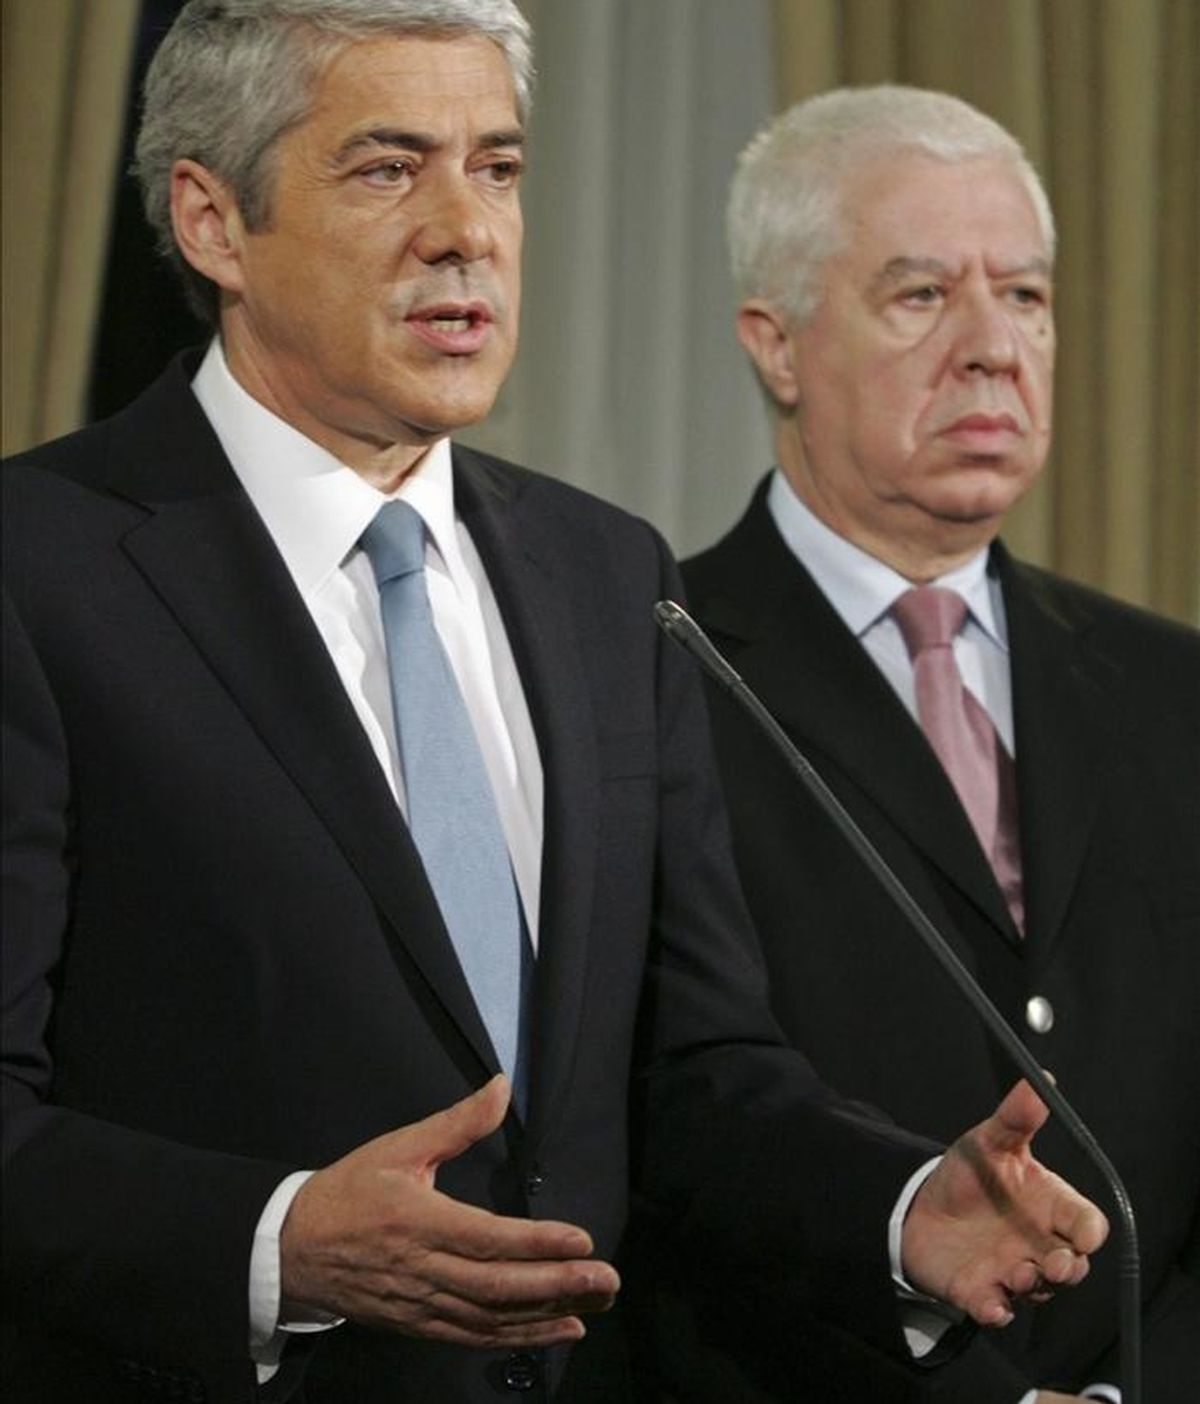 El primer ministro de Portugal, José Sócrates (i), y el ministro de Finanzas, Teixeira dos Santos (d), ayer durante una rueda de prensa en Lisboa (Portugal). EFE